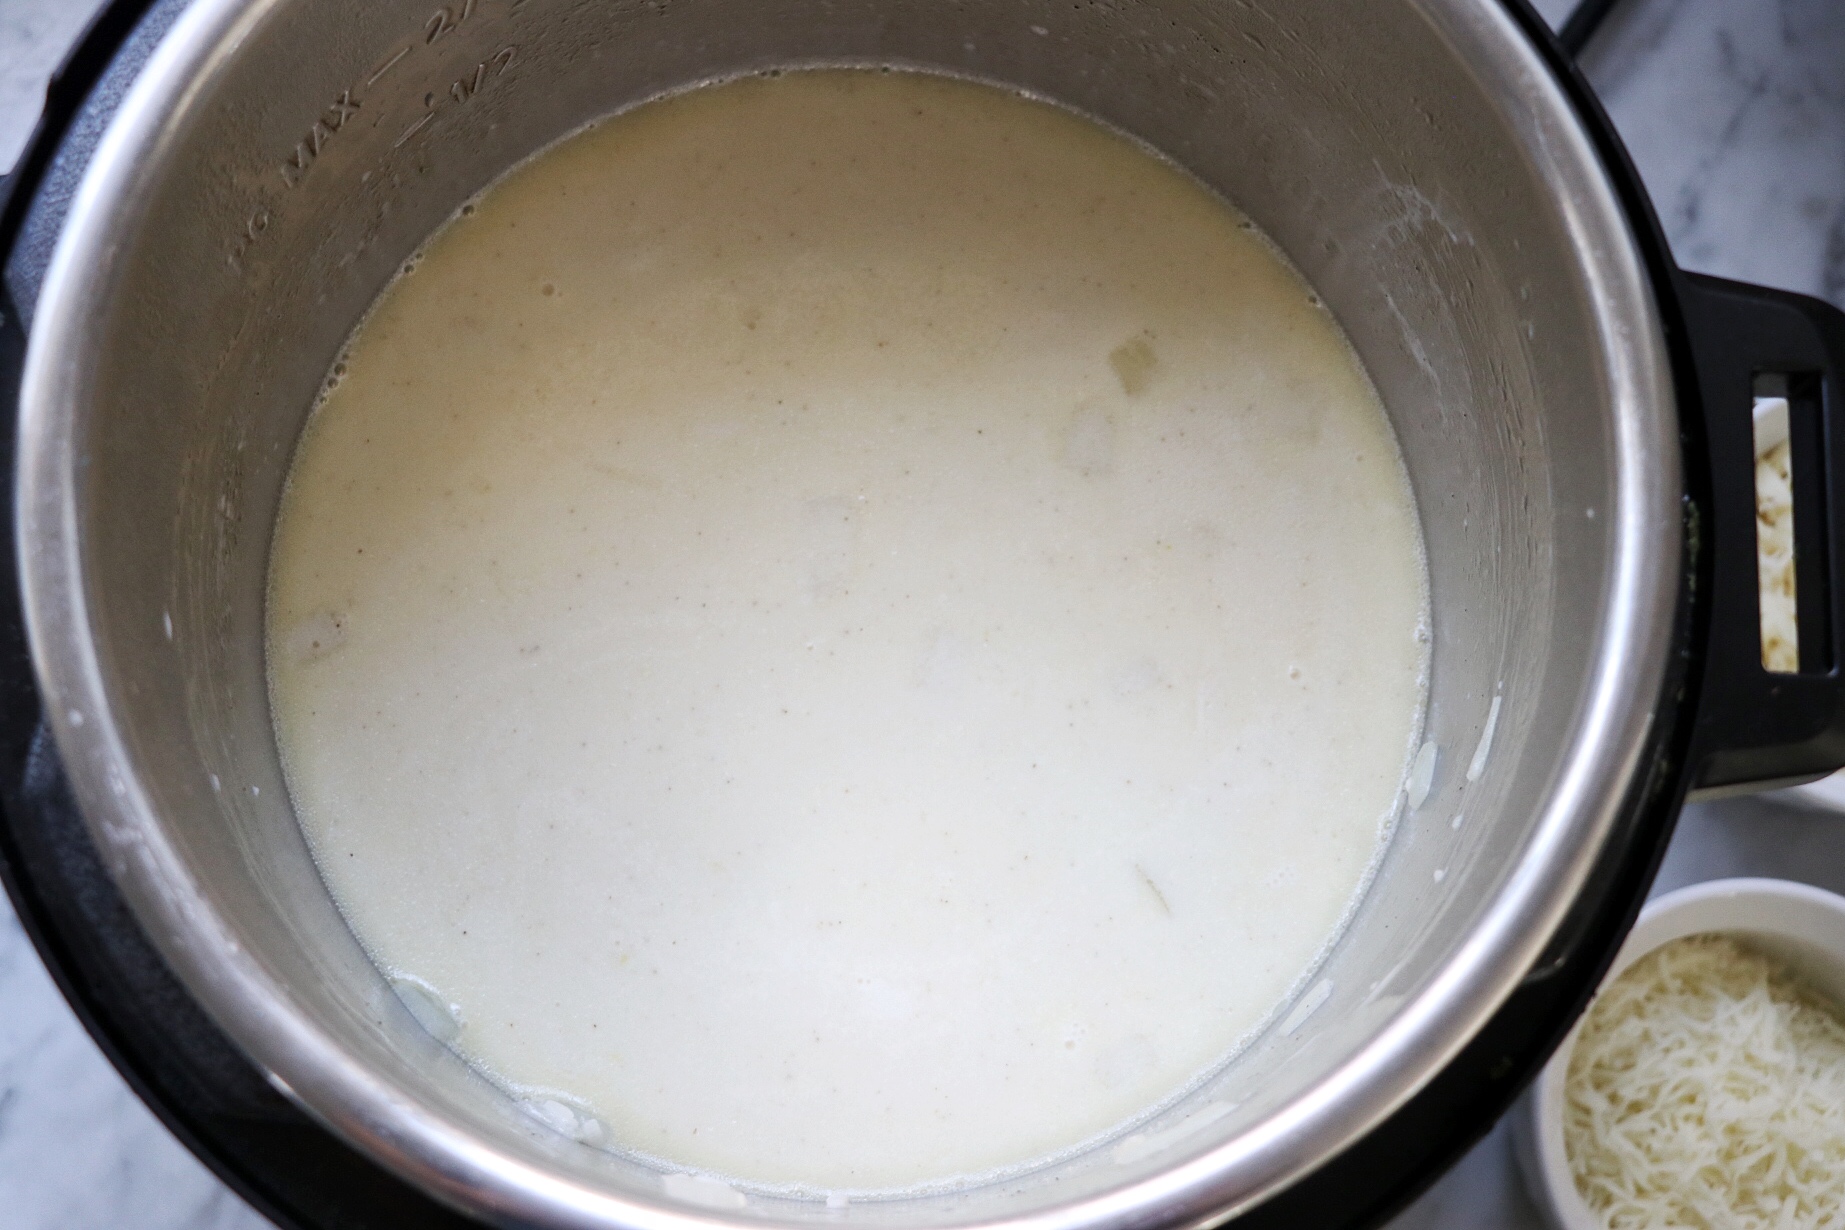 Instant Pot 3-Cheese Risotto recipe